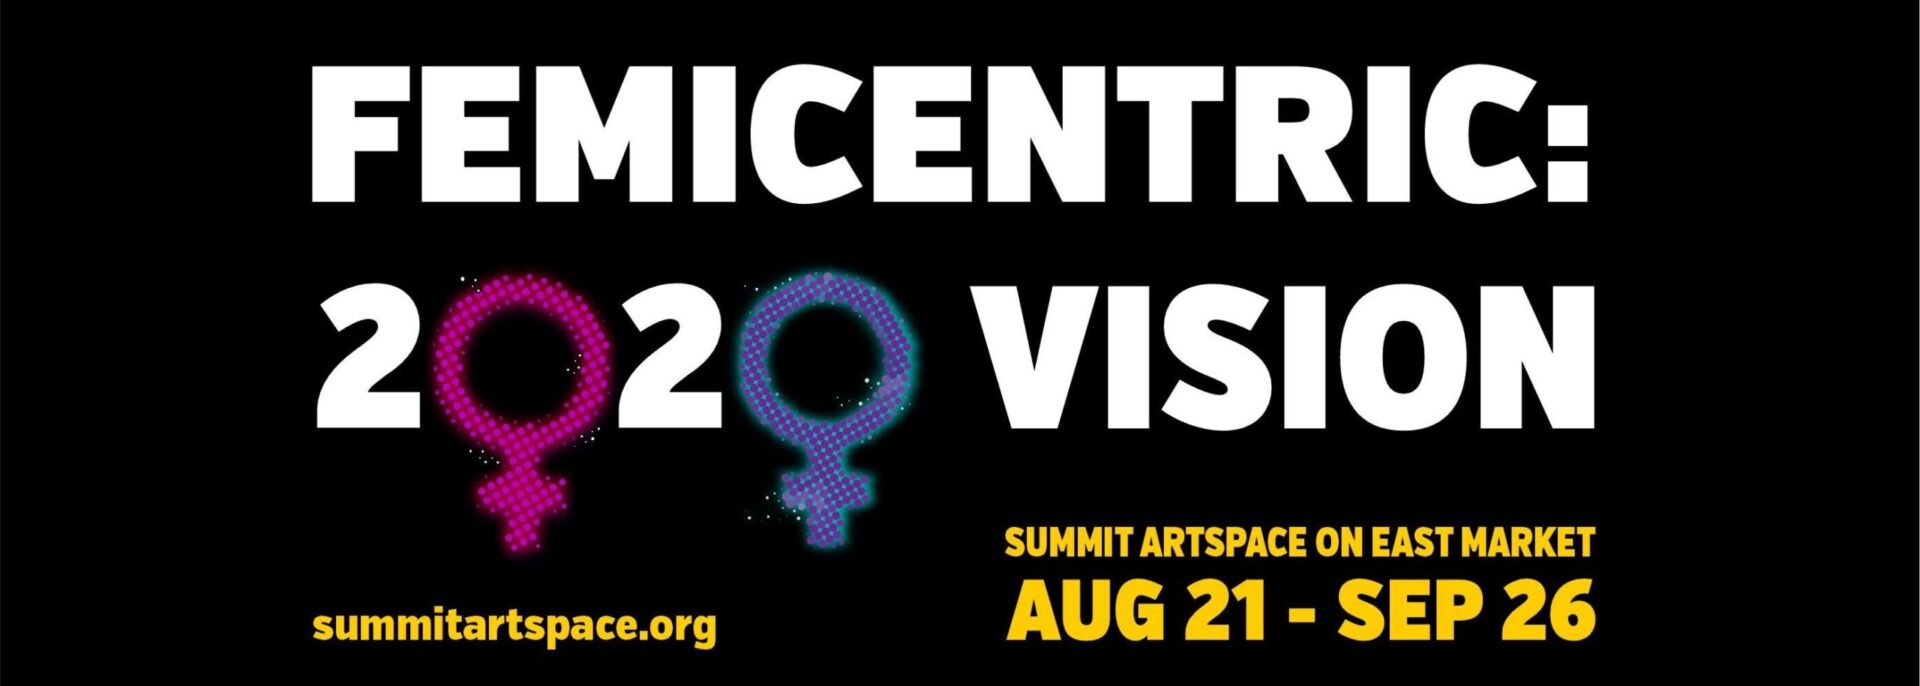 FEMICENTRIC: 2020 VISION Art Exhibit